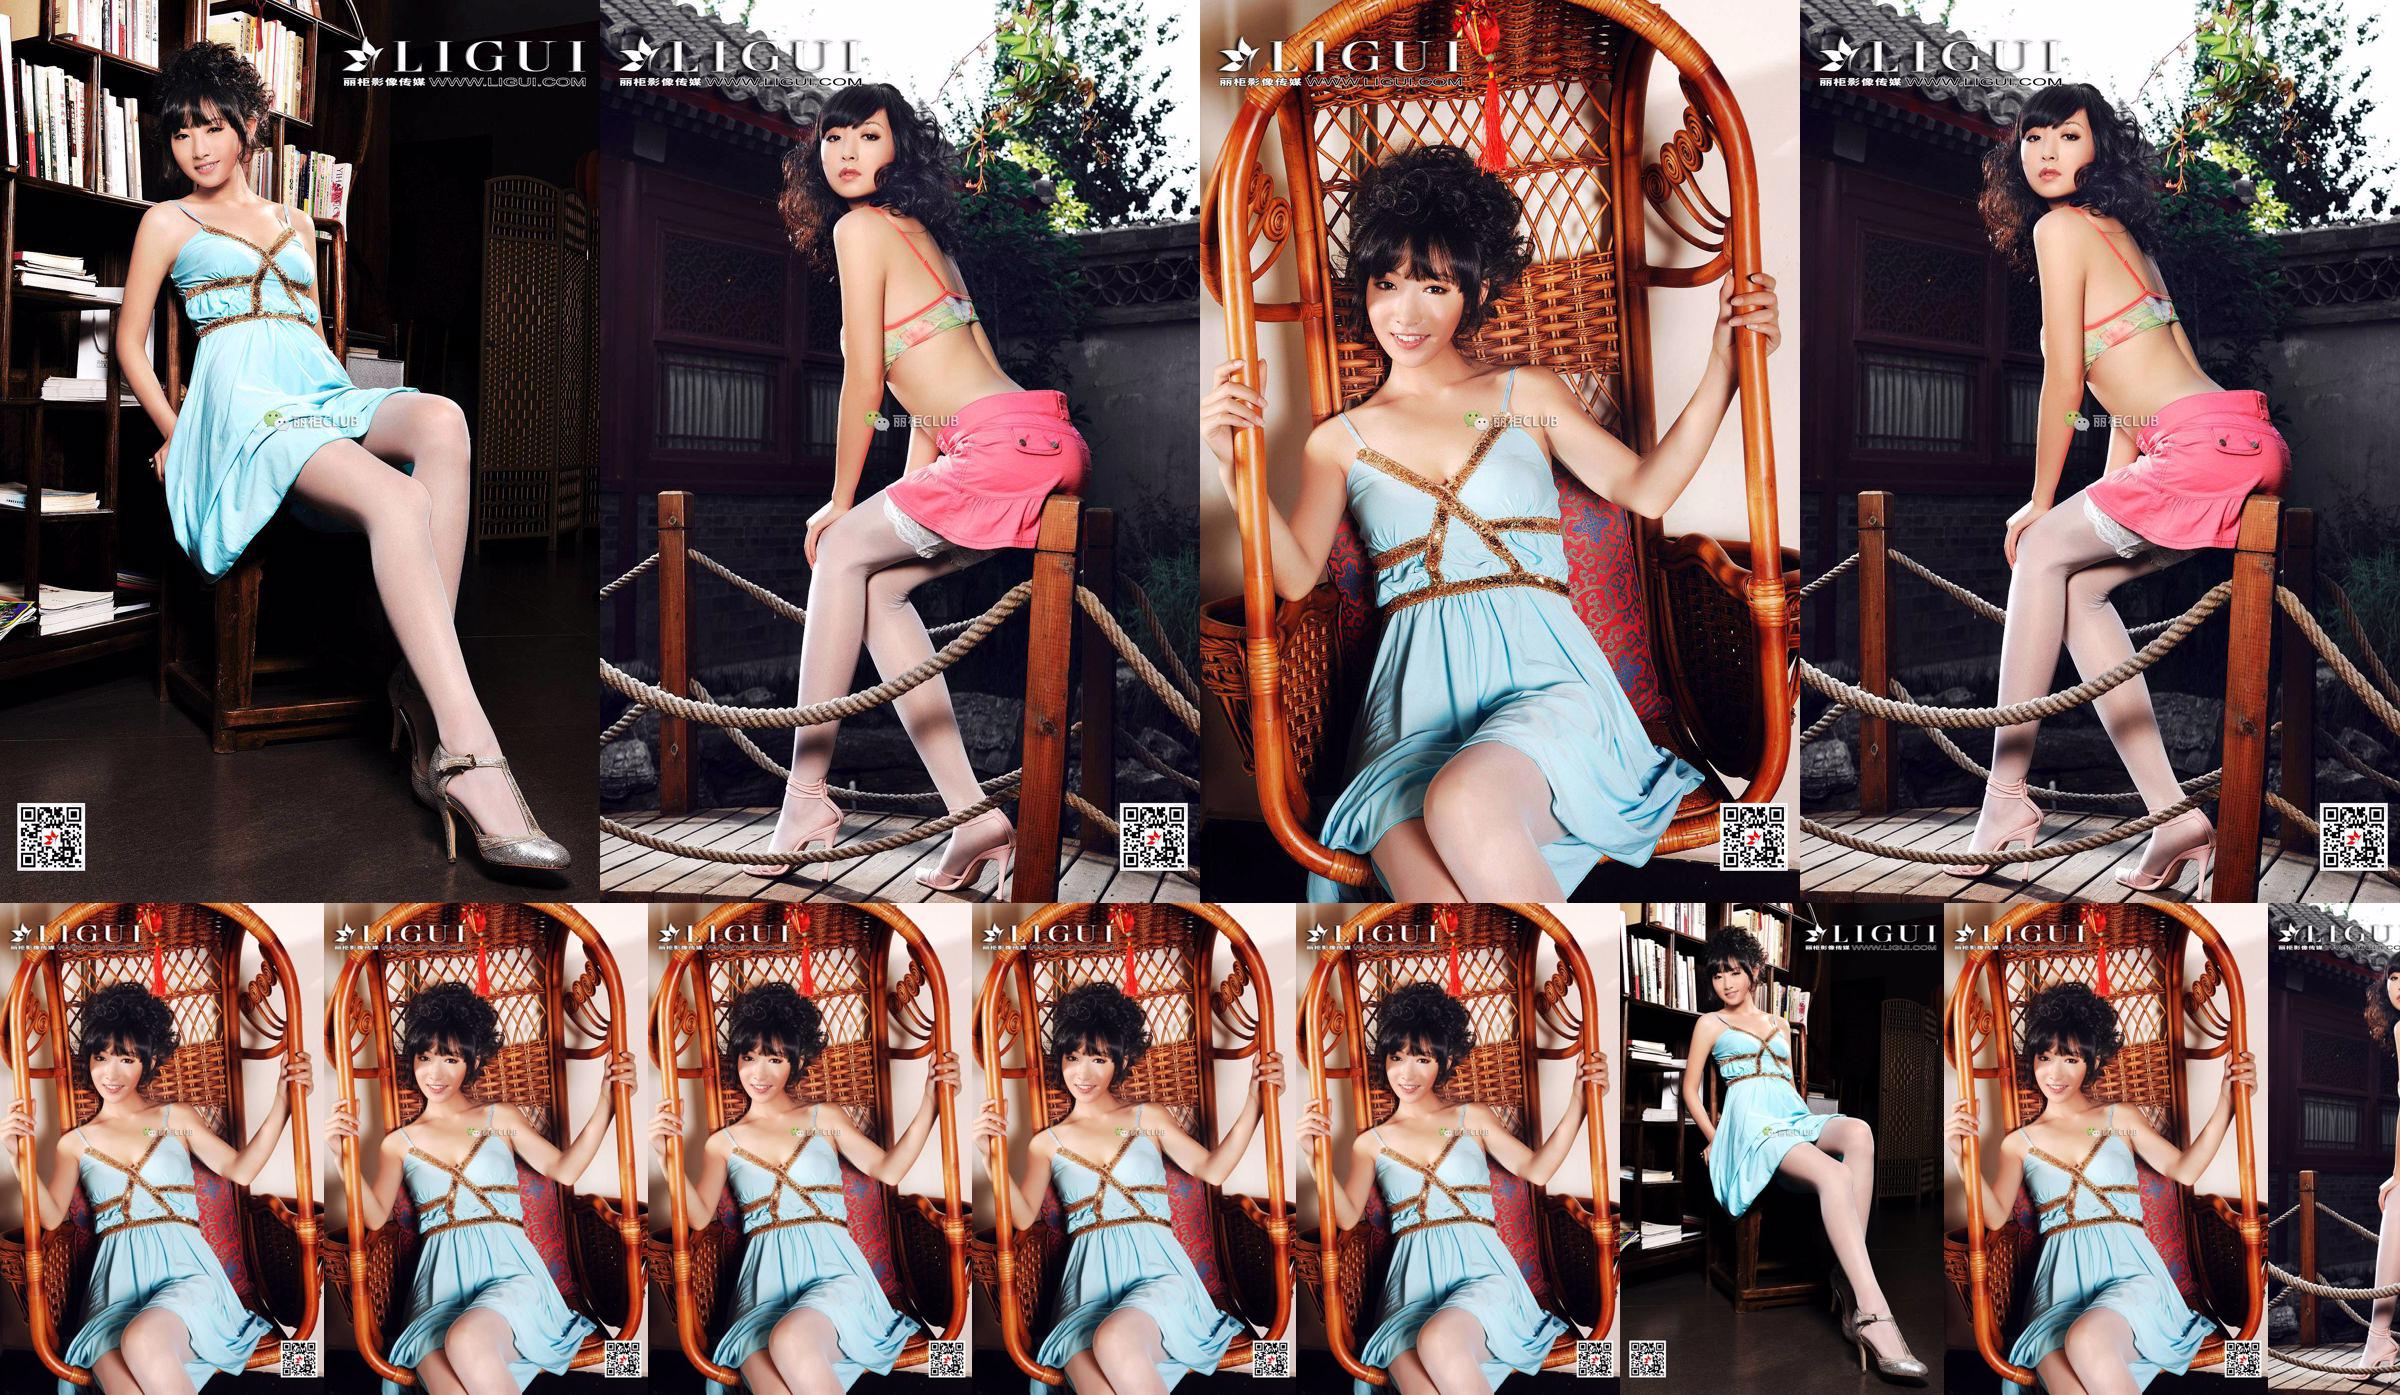 นางแบบขา Liu Yao "Classical Beauty Silk" [丽柜 LIGUI] Beautiful Legs in Stockings No.56c5c2 หน้า 37